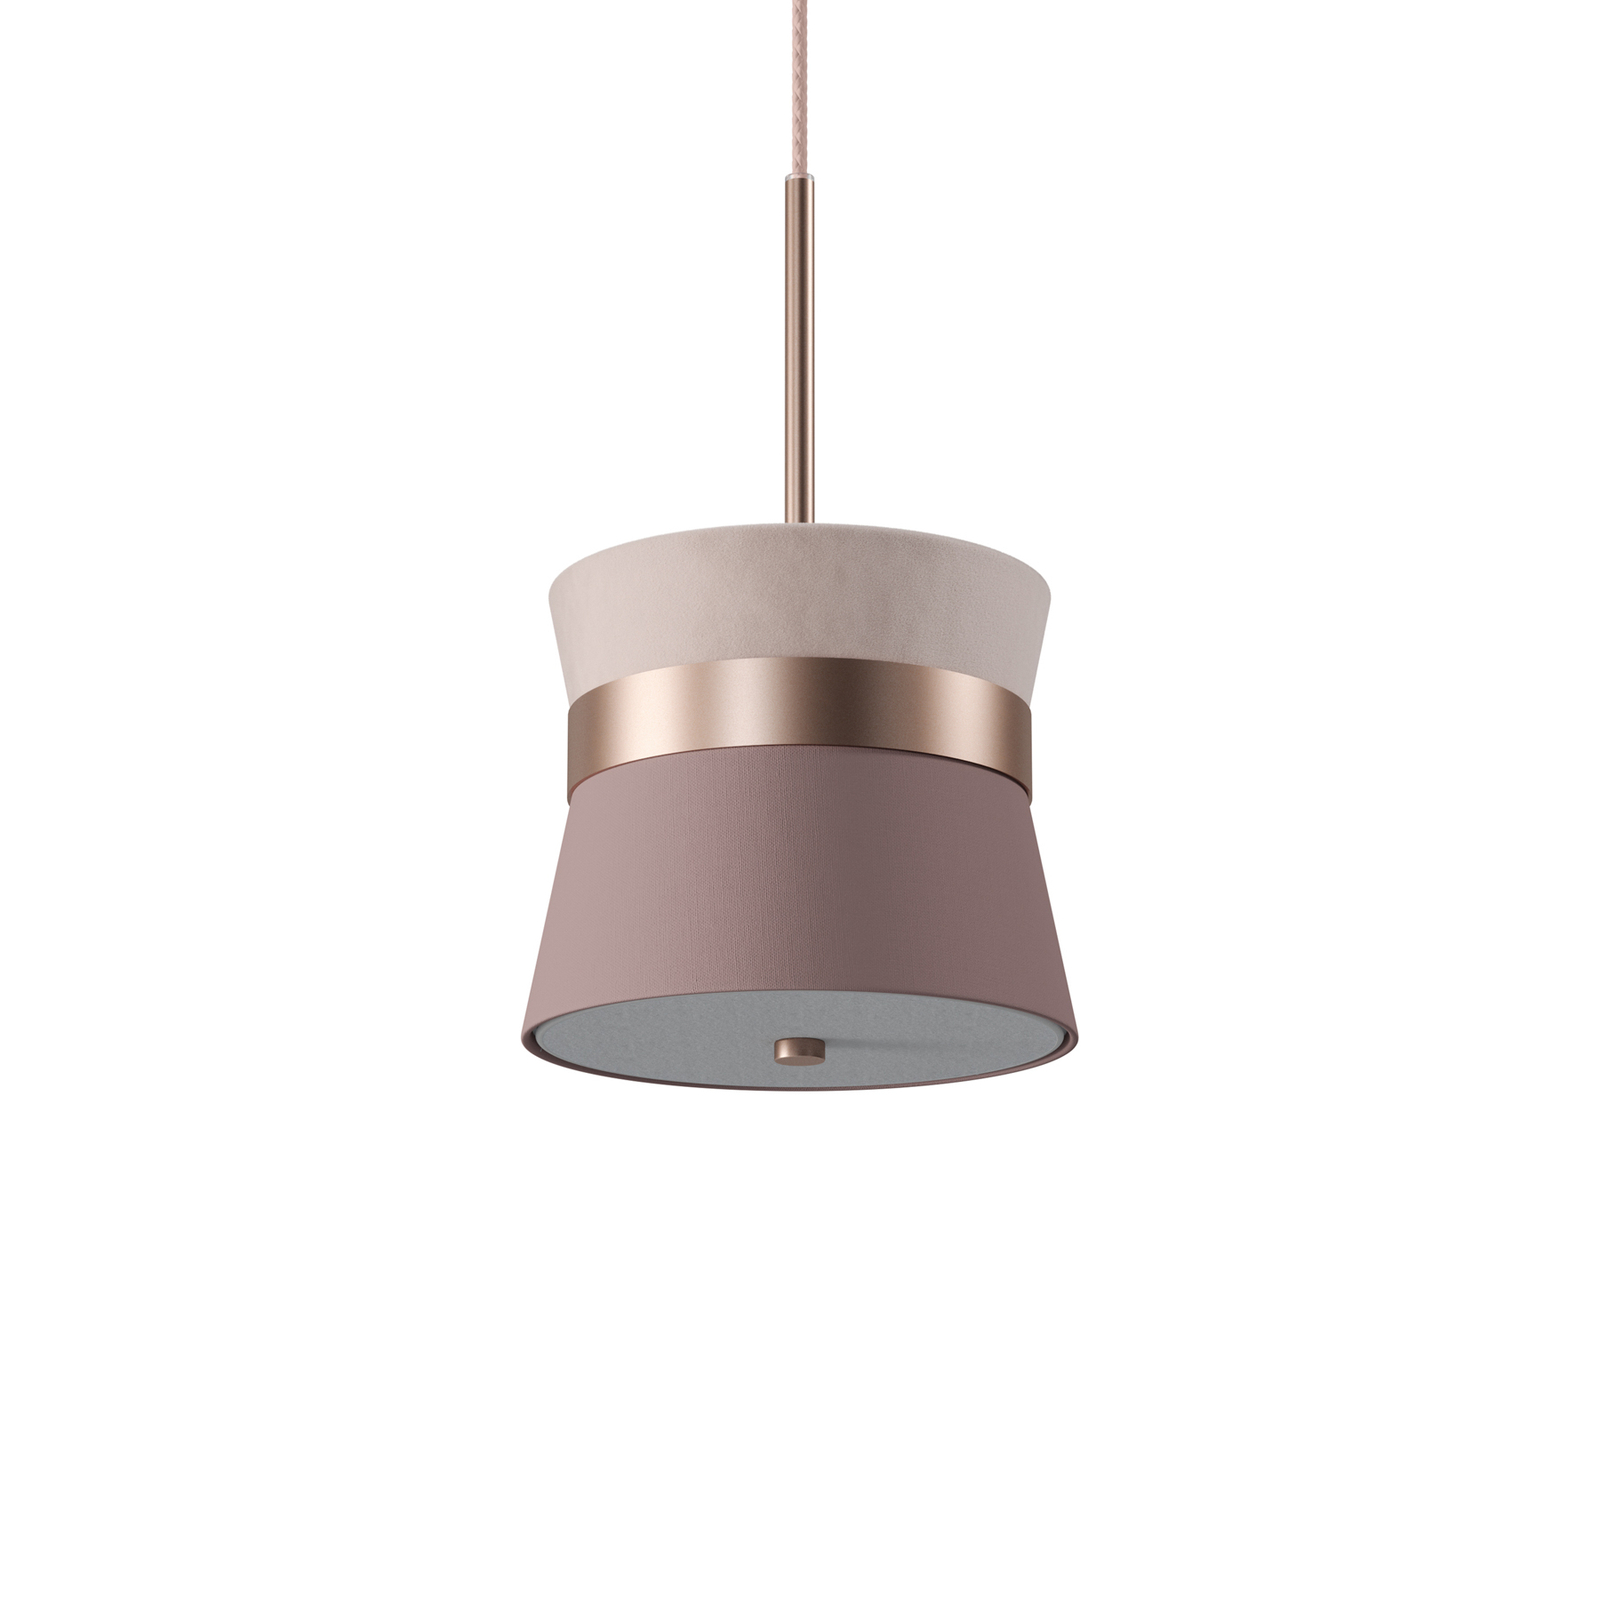 Easy Light Hanglamp In S, Ø 22 cm, Wolke